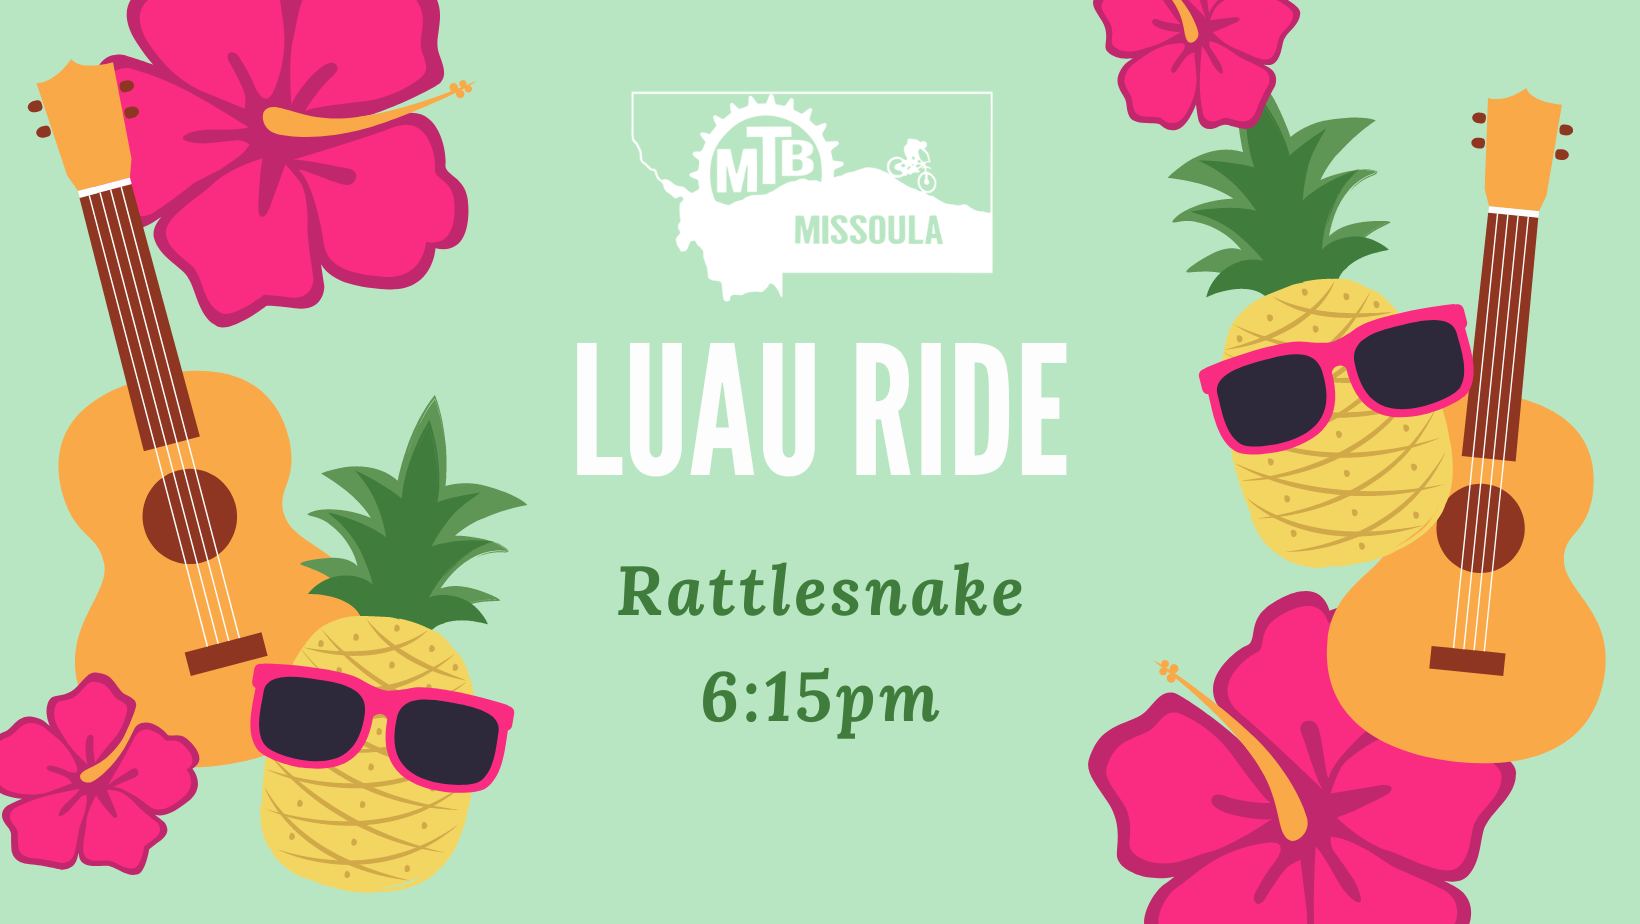 Luau Ride - Rattlesnake